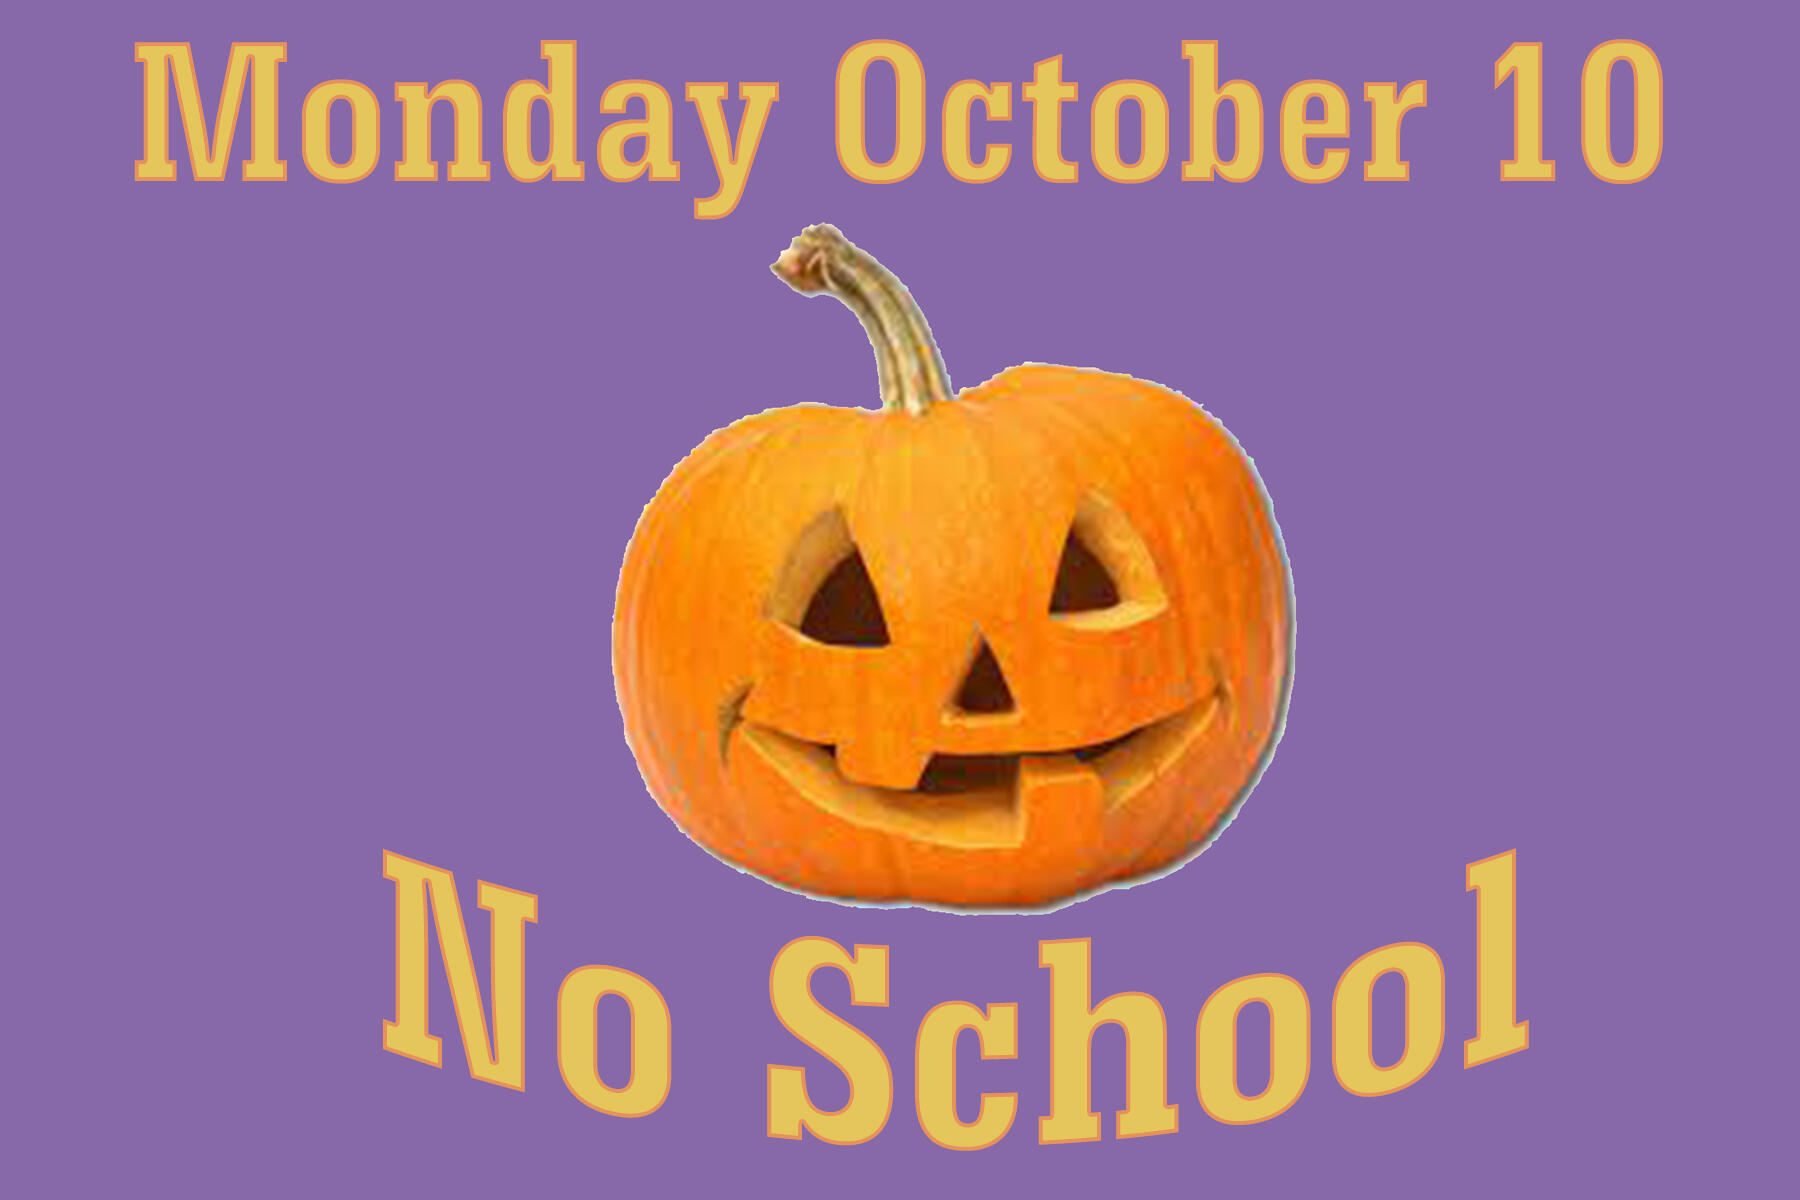 No School October 10